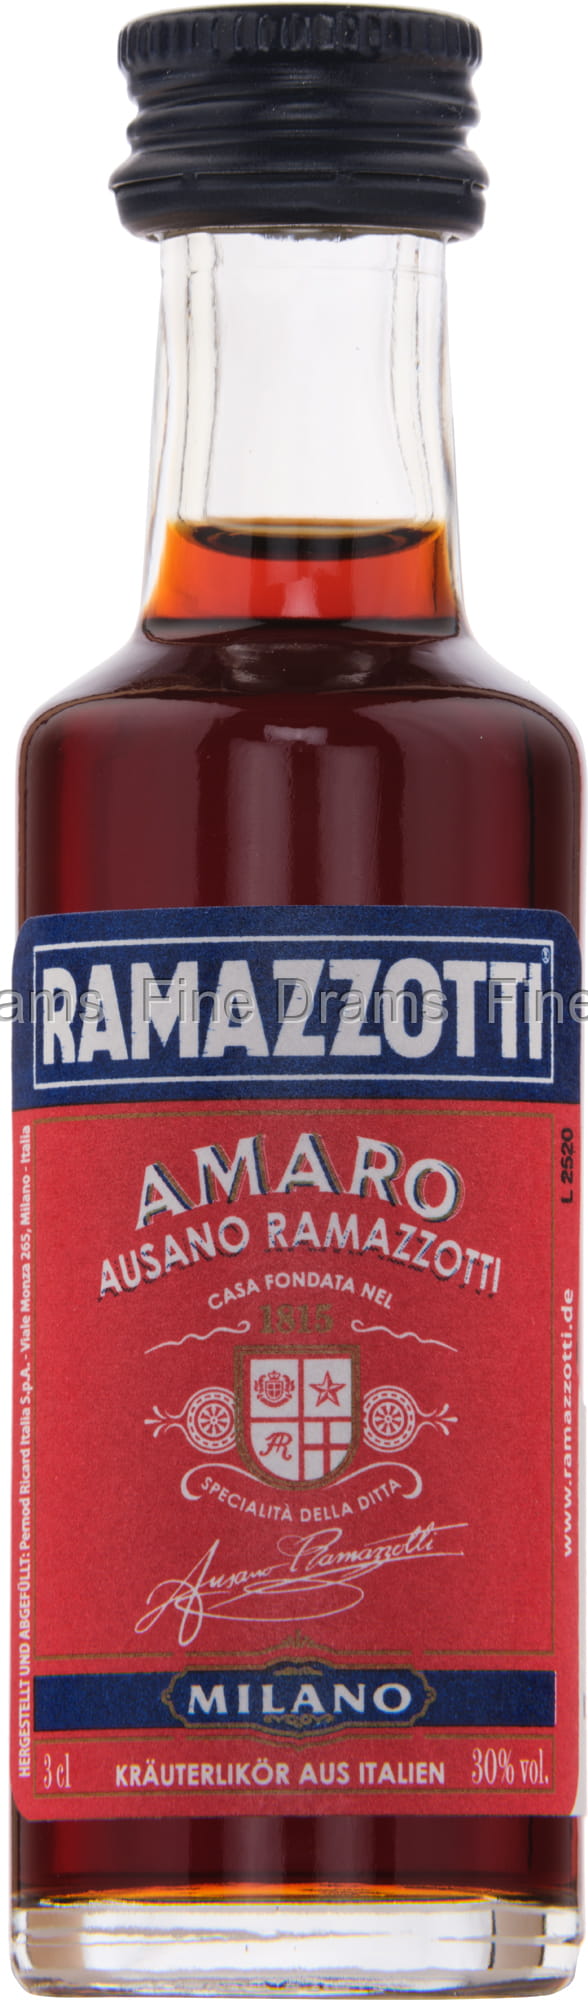 Ramazzotti Miniature Amaro